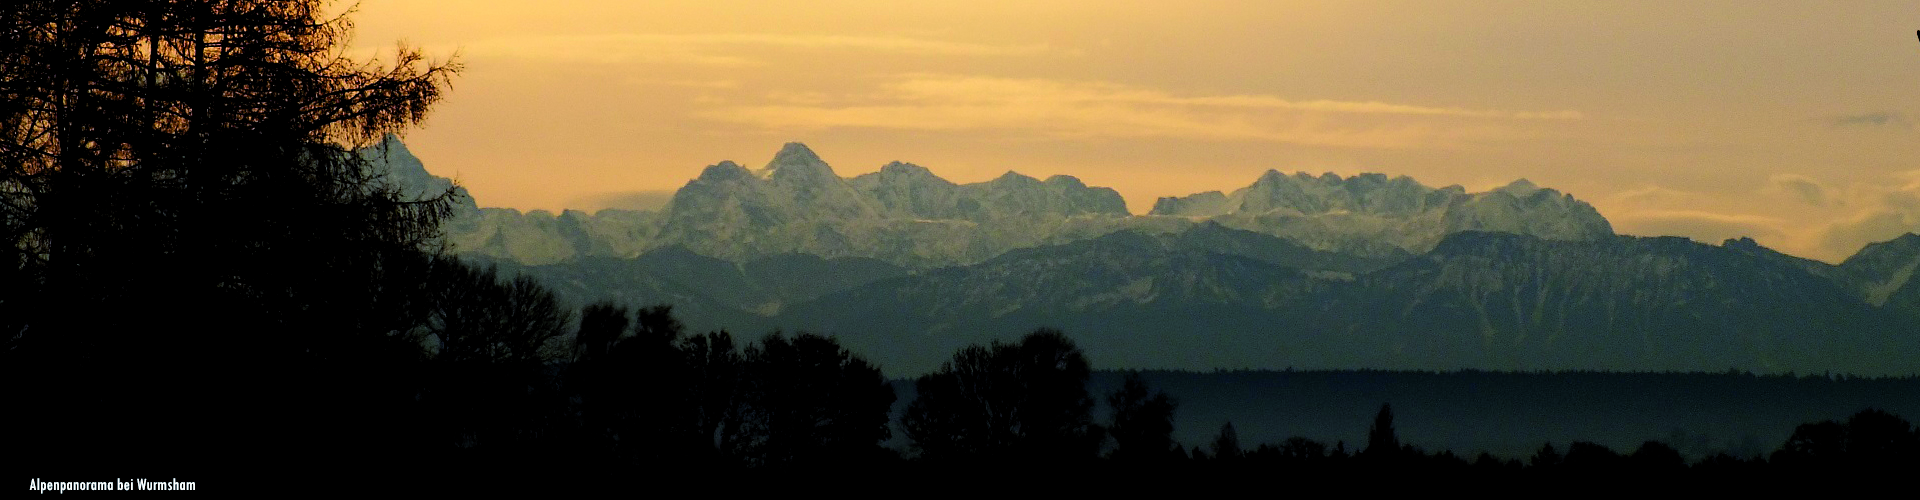 Wurmshamer Alpenpanorama, Foto: Stefan Schütze